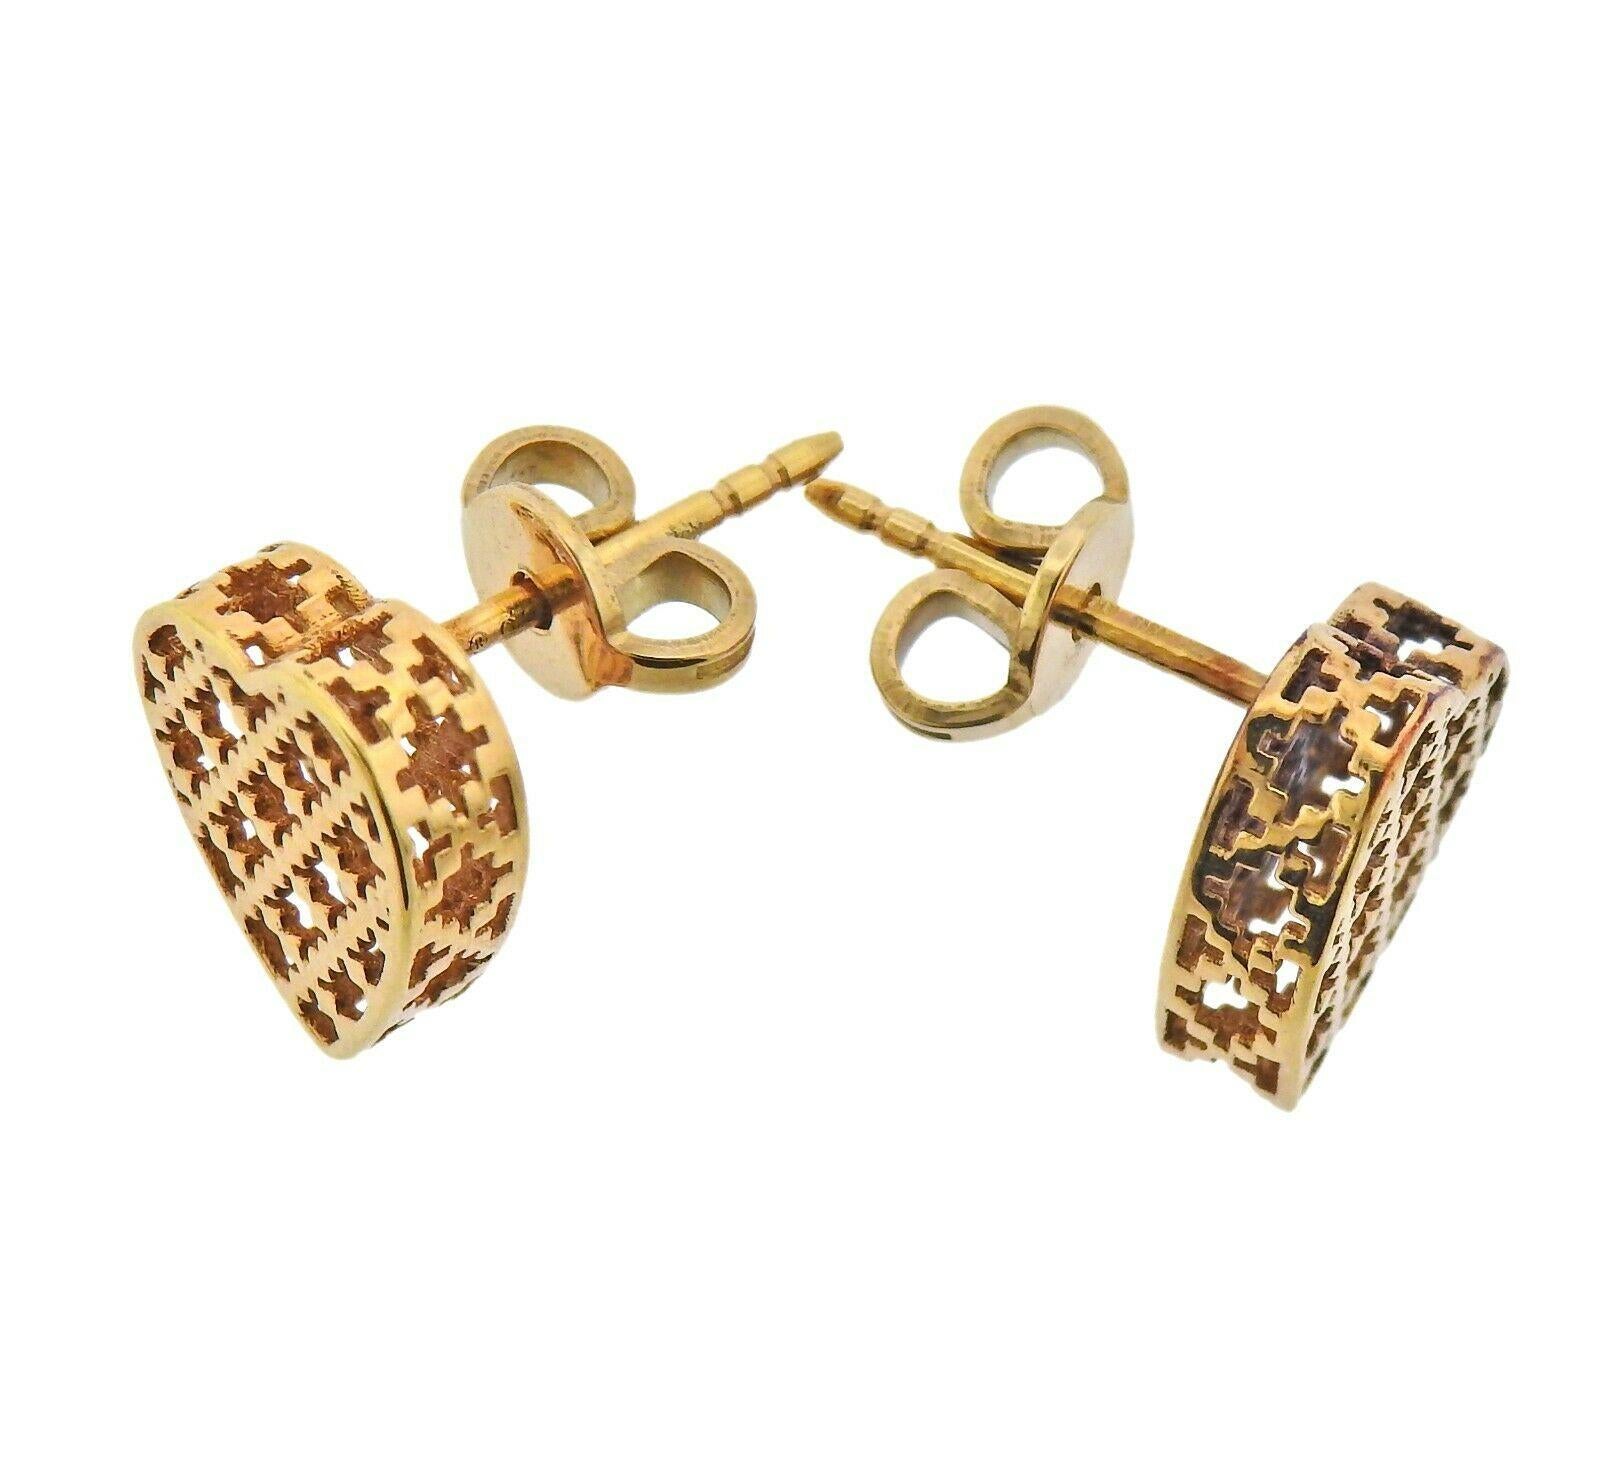 gucci heart earrings gold